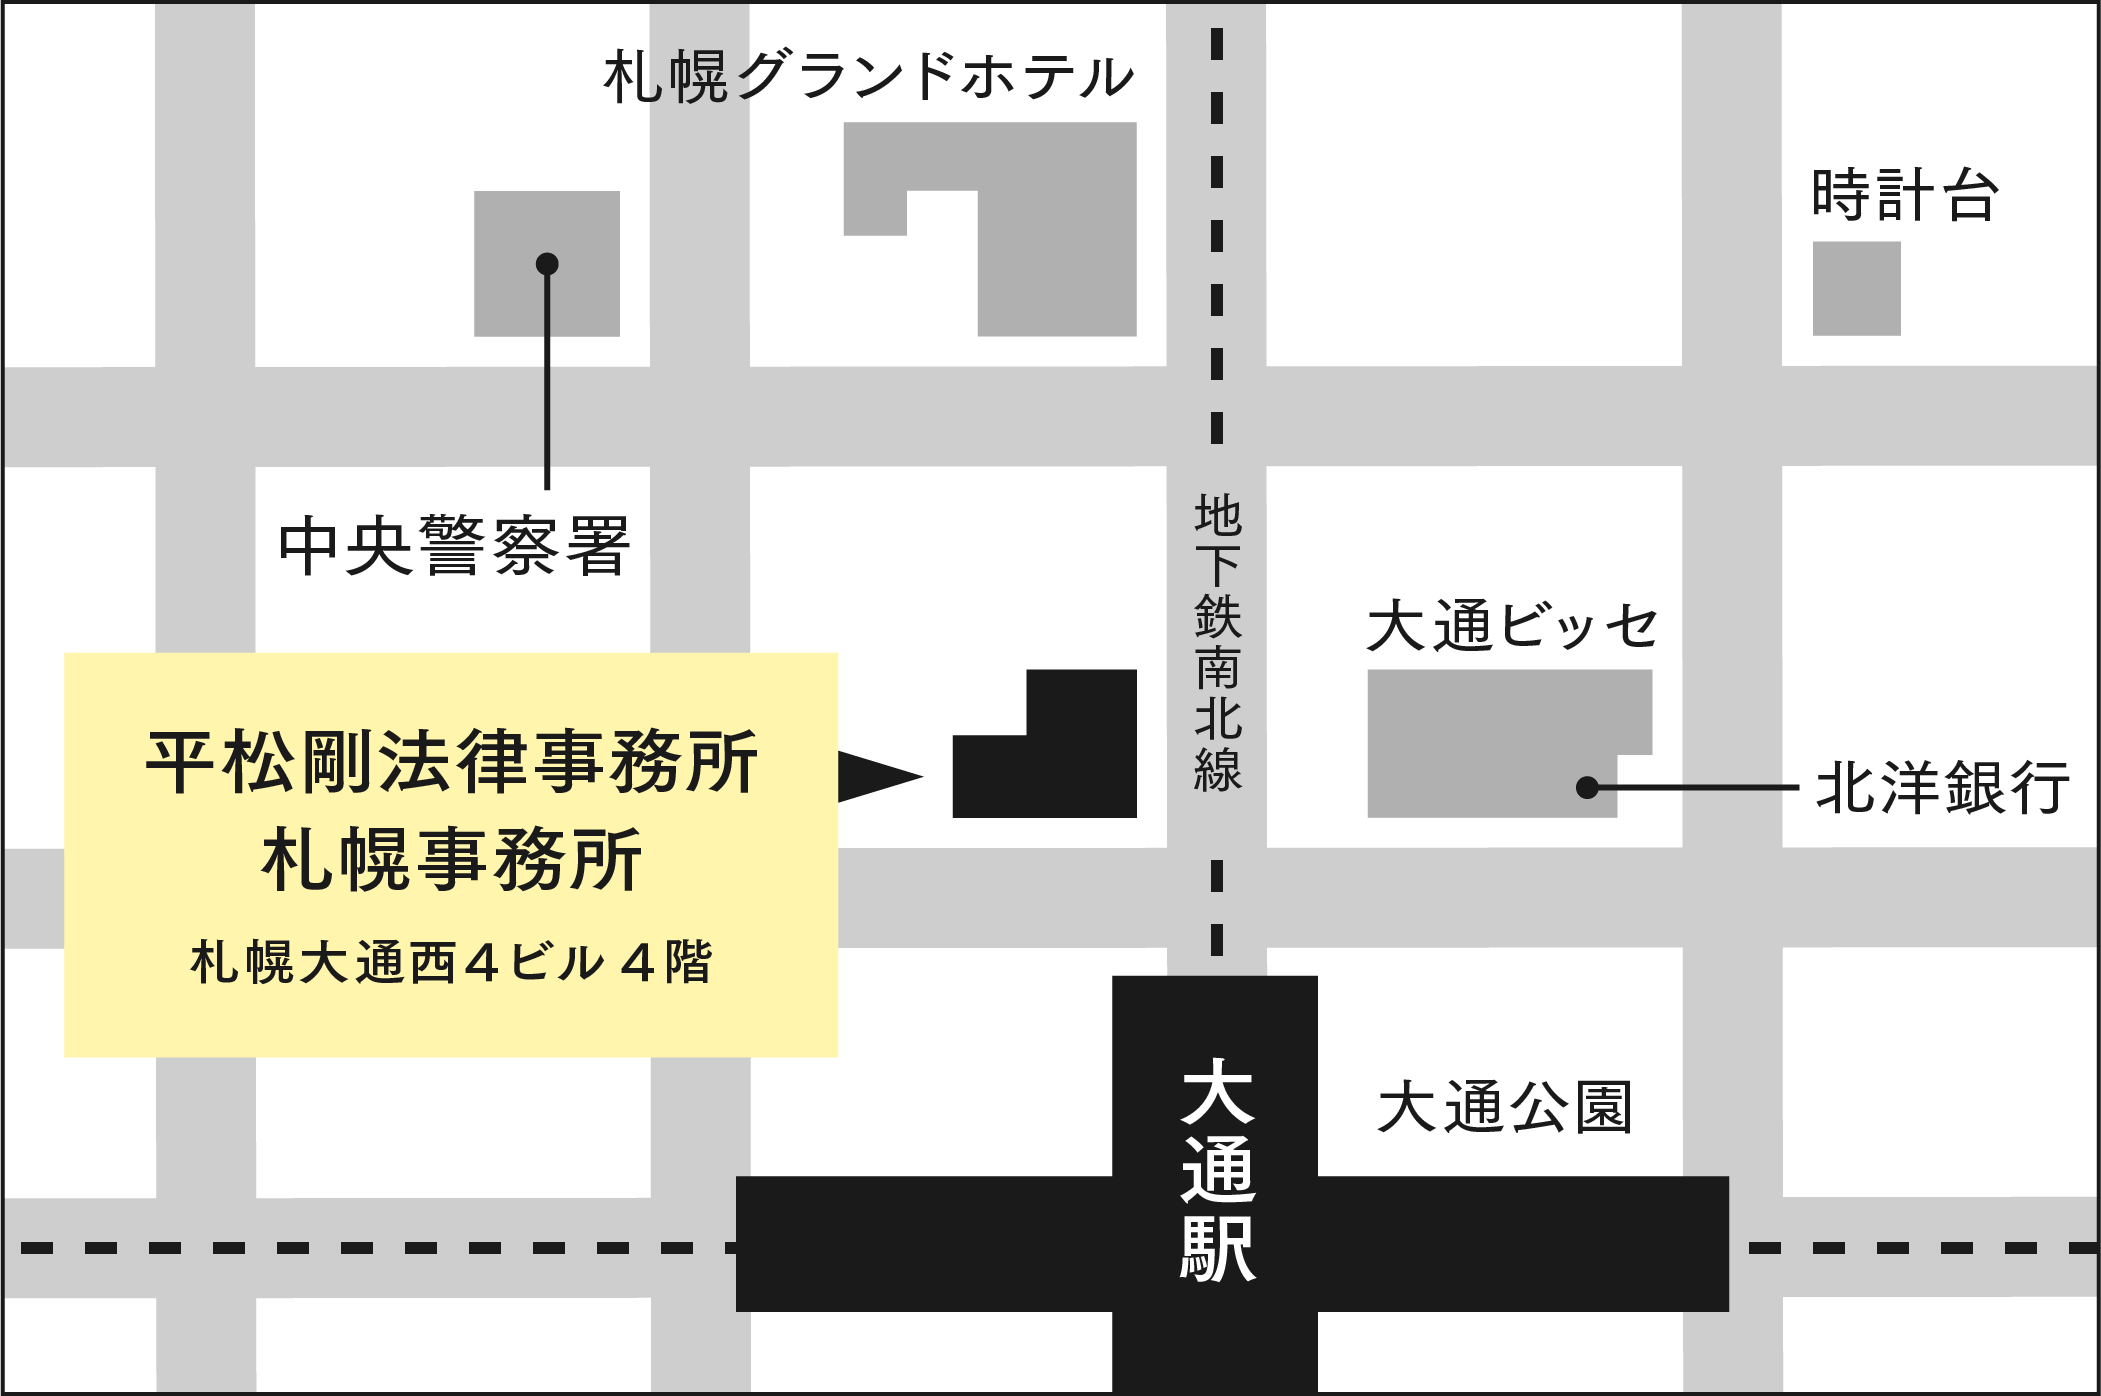 札幌事務所の地図